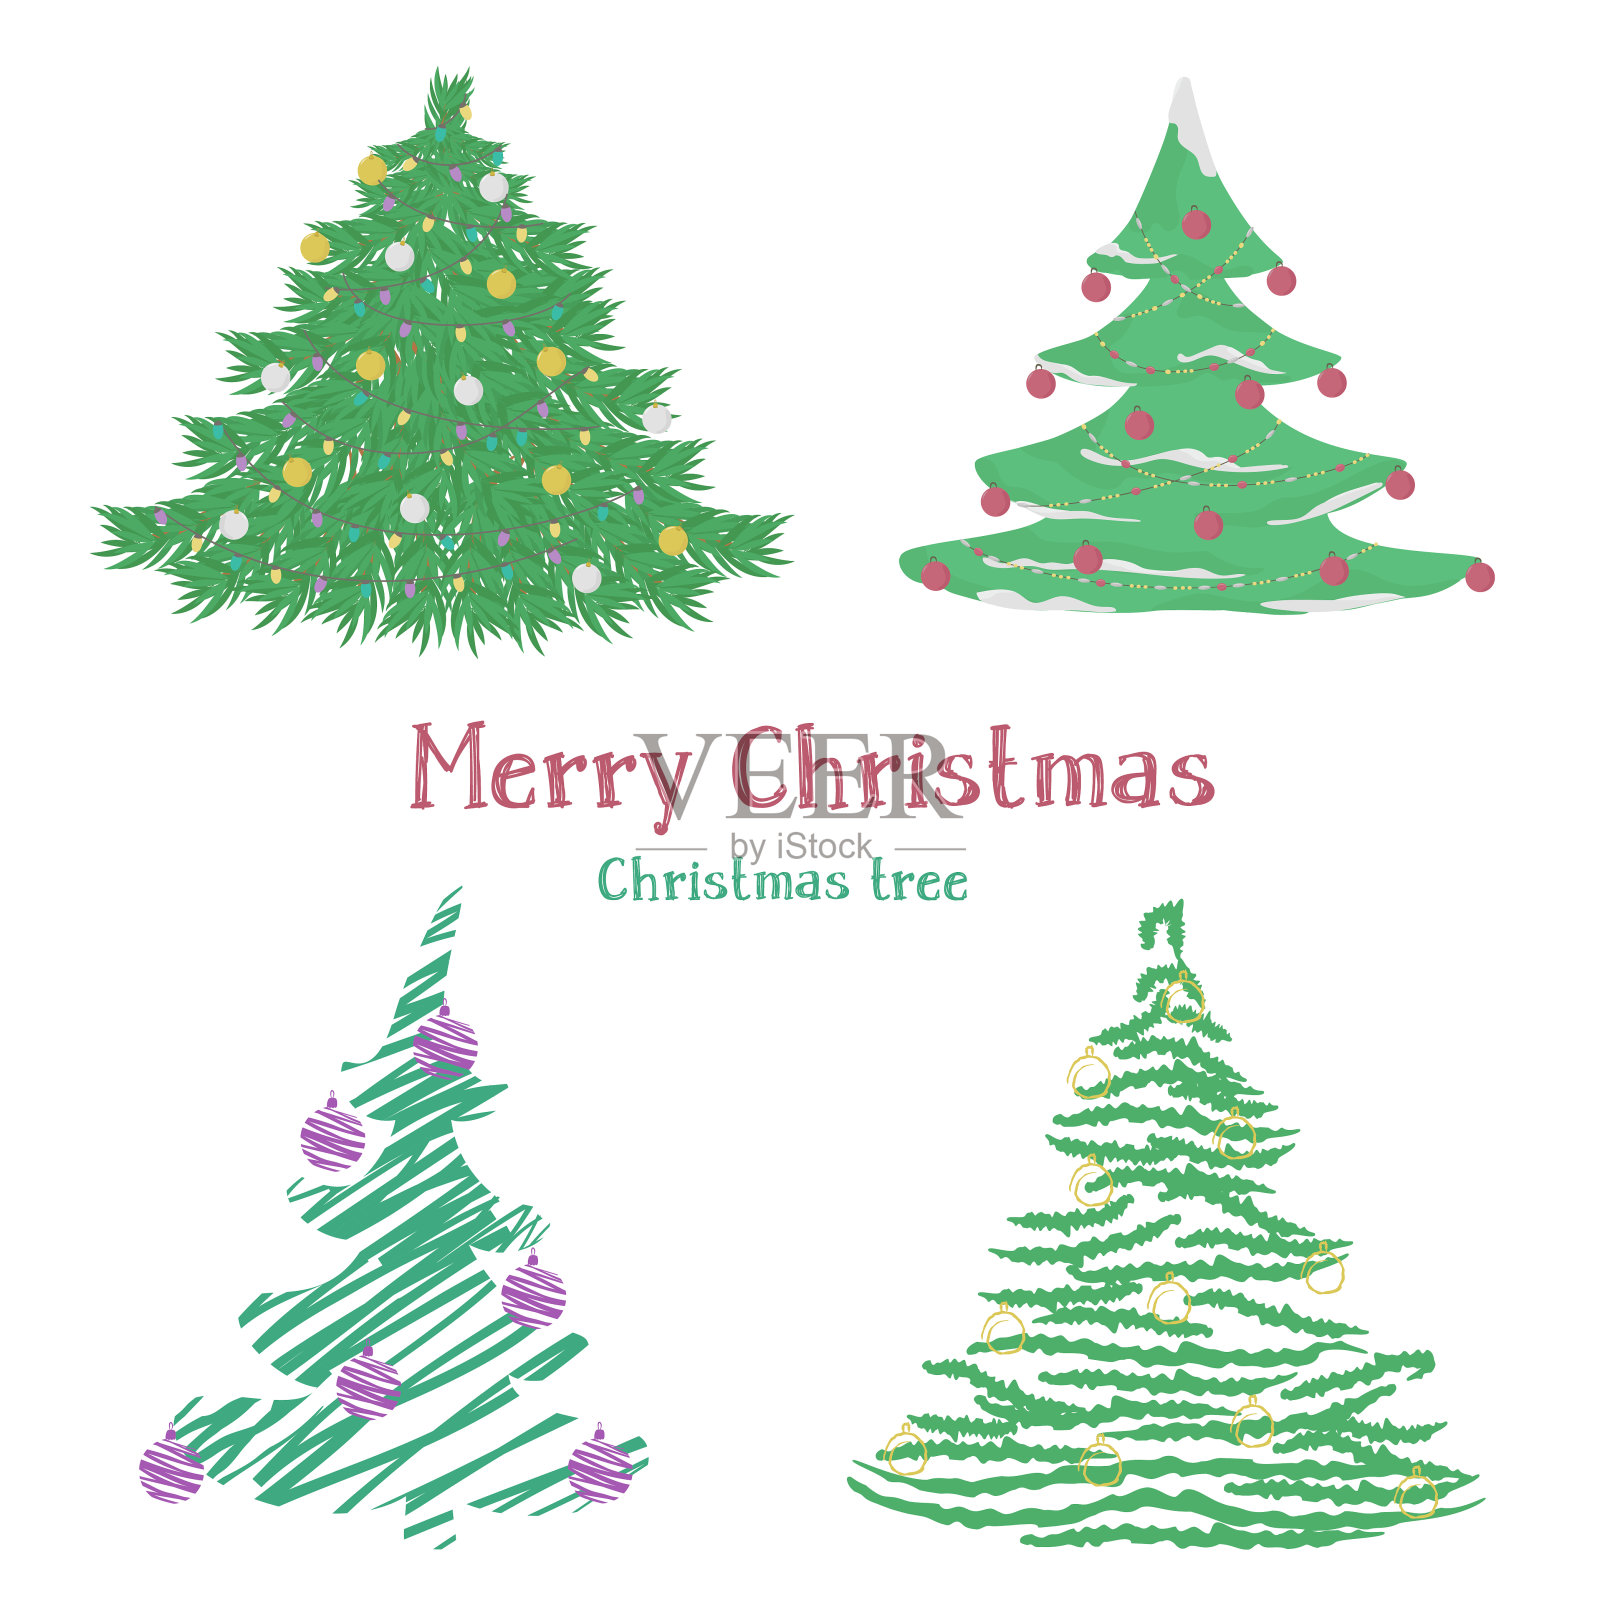 不同的圣诞树设计元素图片